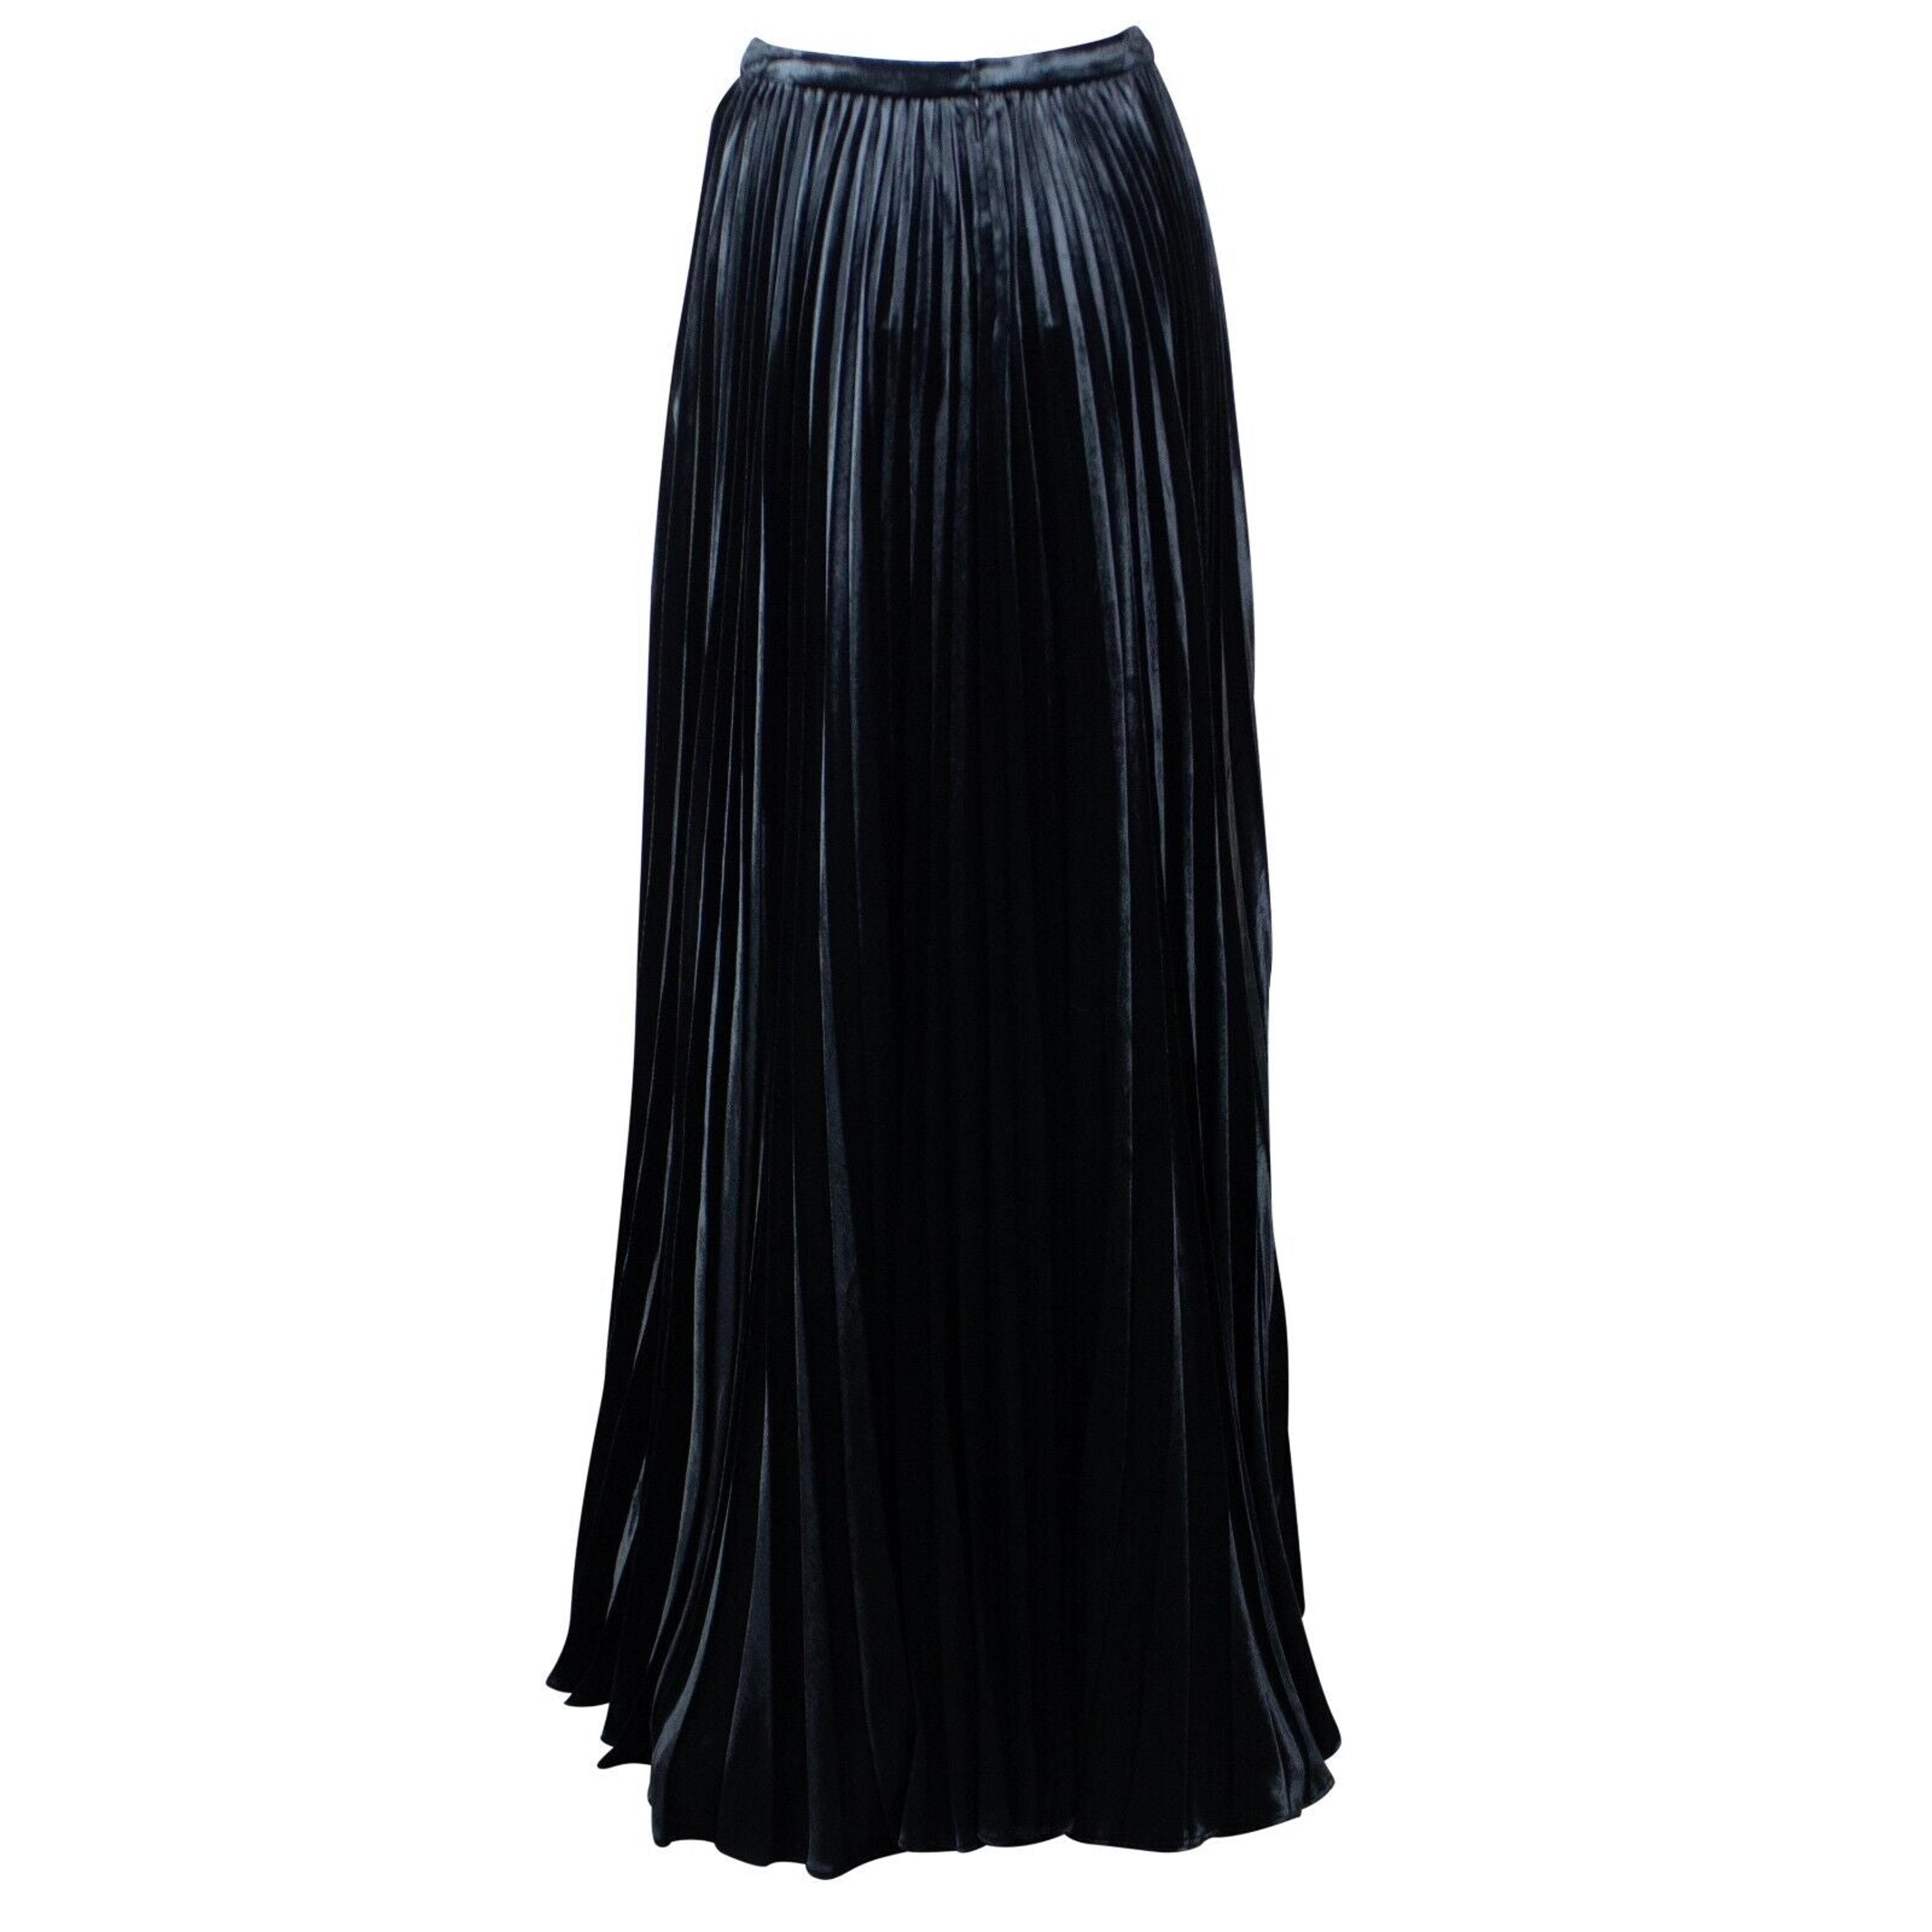 Alternate View 2 of Women's Black Plisse Velvet Maxi Skirt